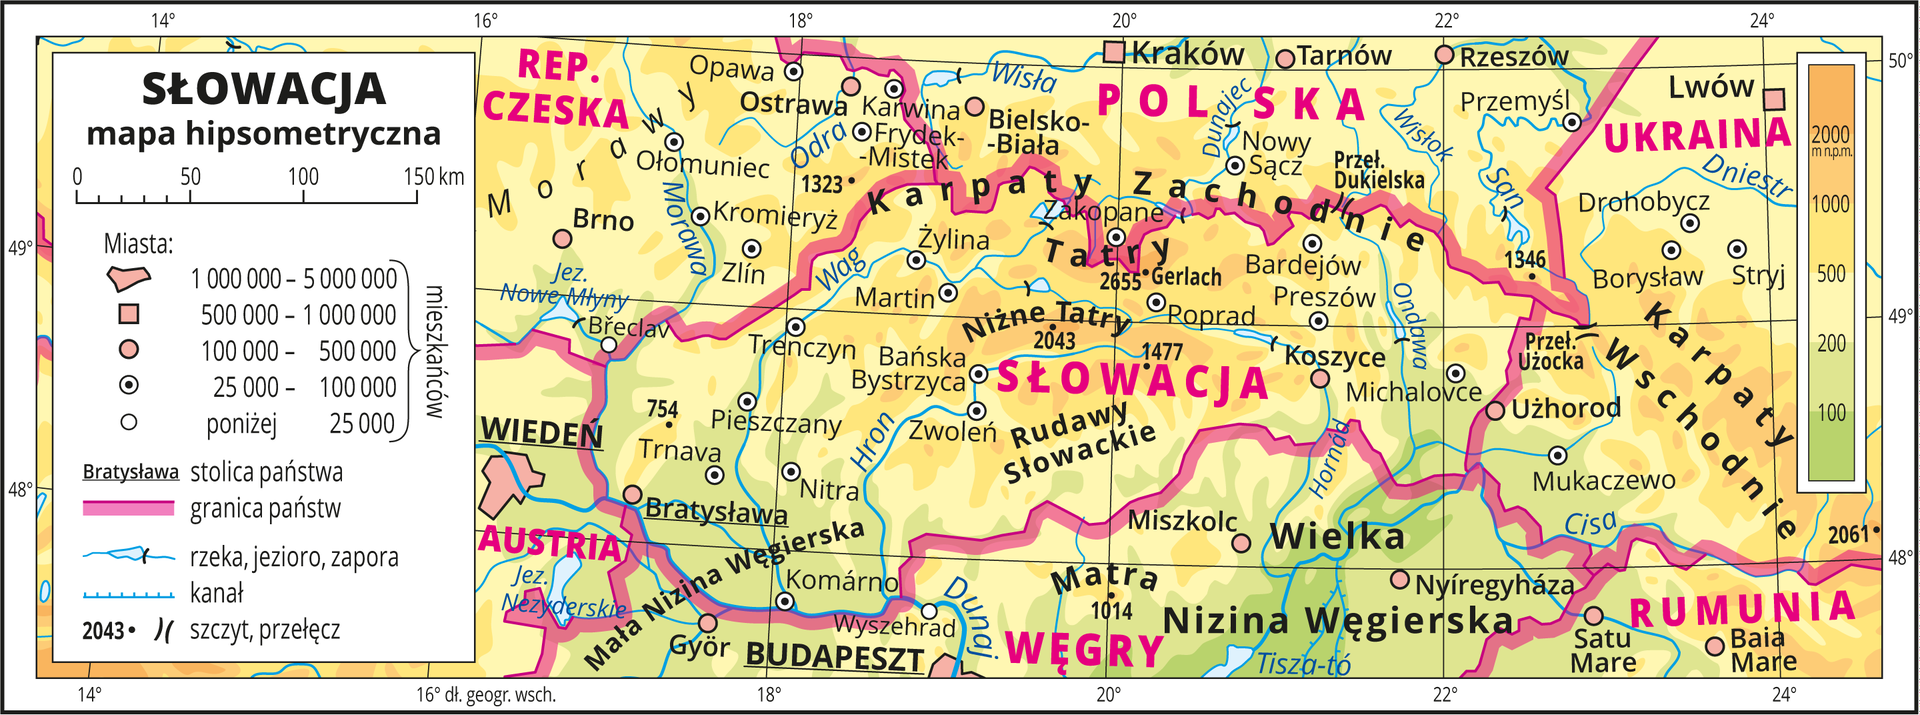 Ilustracja przedstawia mapę hipsometryczną Słowacji. W obrębie lądów występują obszary w kolorze zielonym, żółtym i pomarańczowym. Przeważają obszary w kolorze żółtym i pomarańczowym. Na mapie opisano nazwy nizin, wyżyn, pasm górskich, rzek i jezior. Oznaczono i opisano główne miasta. Oznaczono czarnymi kropkami i opisano szczyty górskie. Różową wstążką oznaczono granice państw. Kolorem czerwonym opisano państwa sąsiadujące ze Słowacją. Mapa pokryta jest równoleżnikami i południkami. Dookoła mapy w białej ramce opisano współrzędne geograficzne co dwa stopnie. W legendzie umieszczono i opisano znaki użyte na mapie.